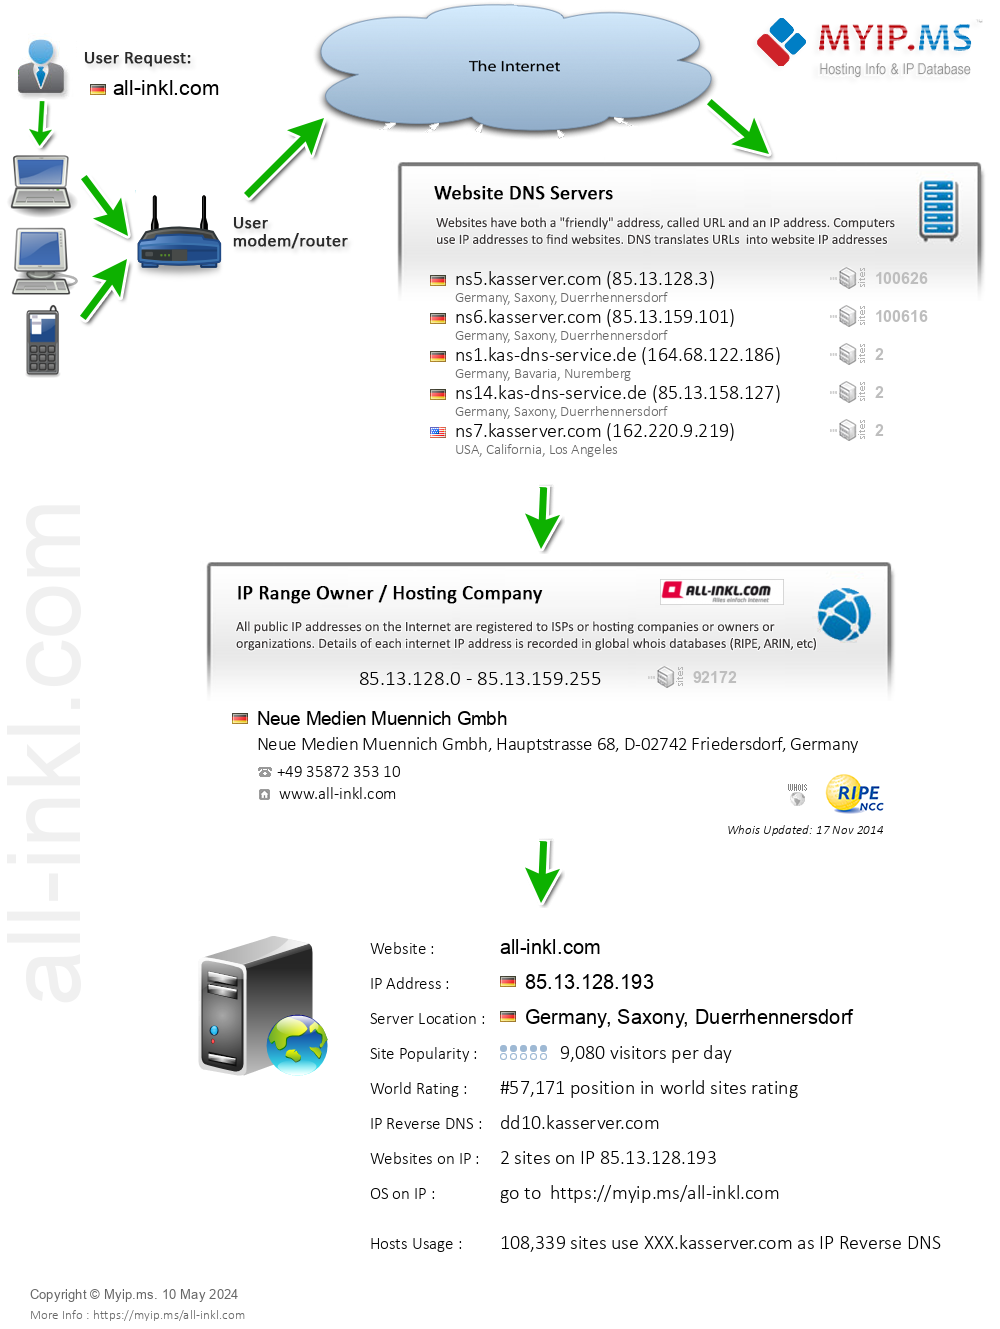 All-inkl.com - Website Hosting Visual IP Diagram